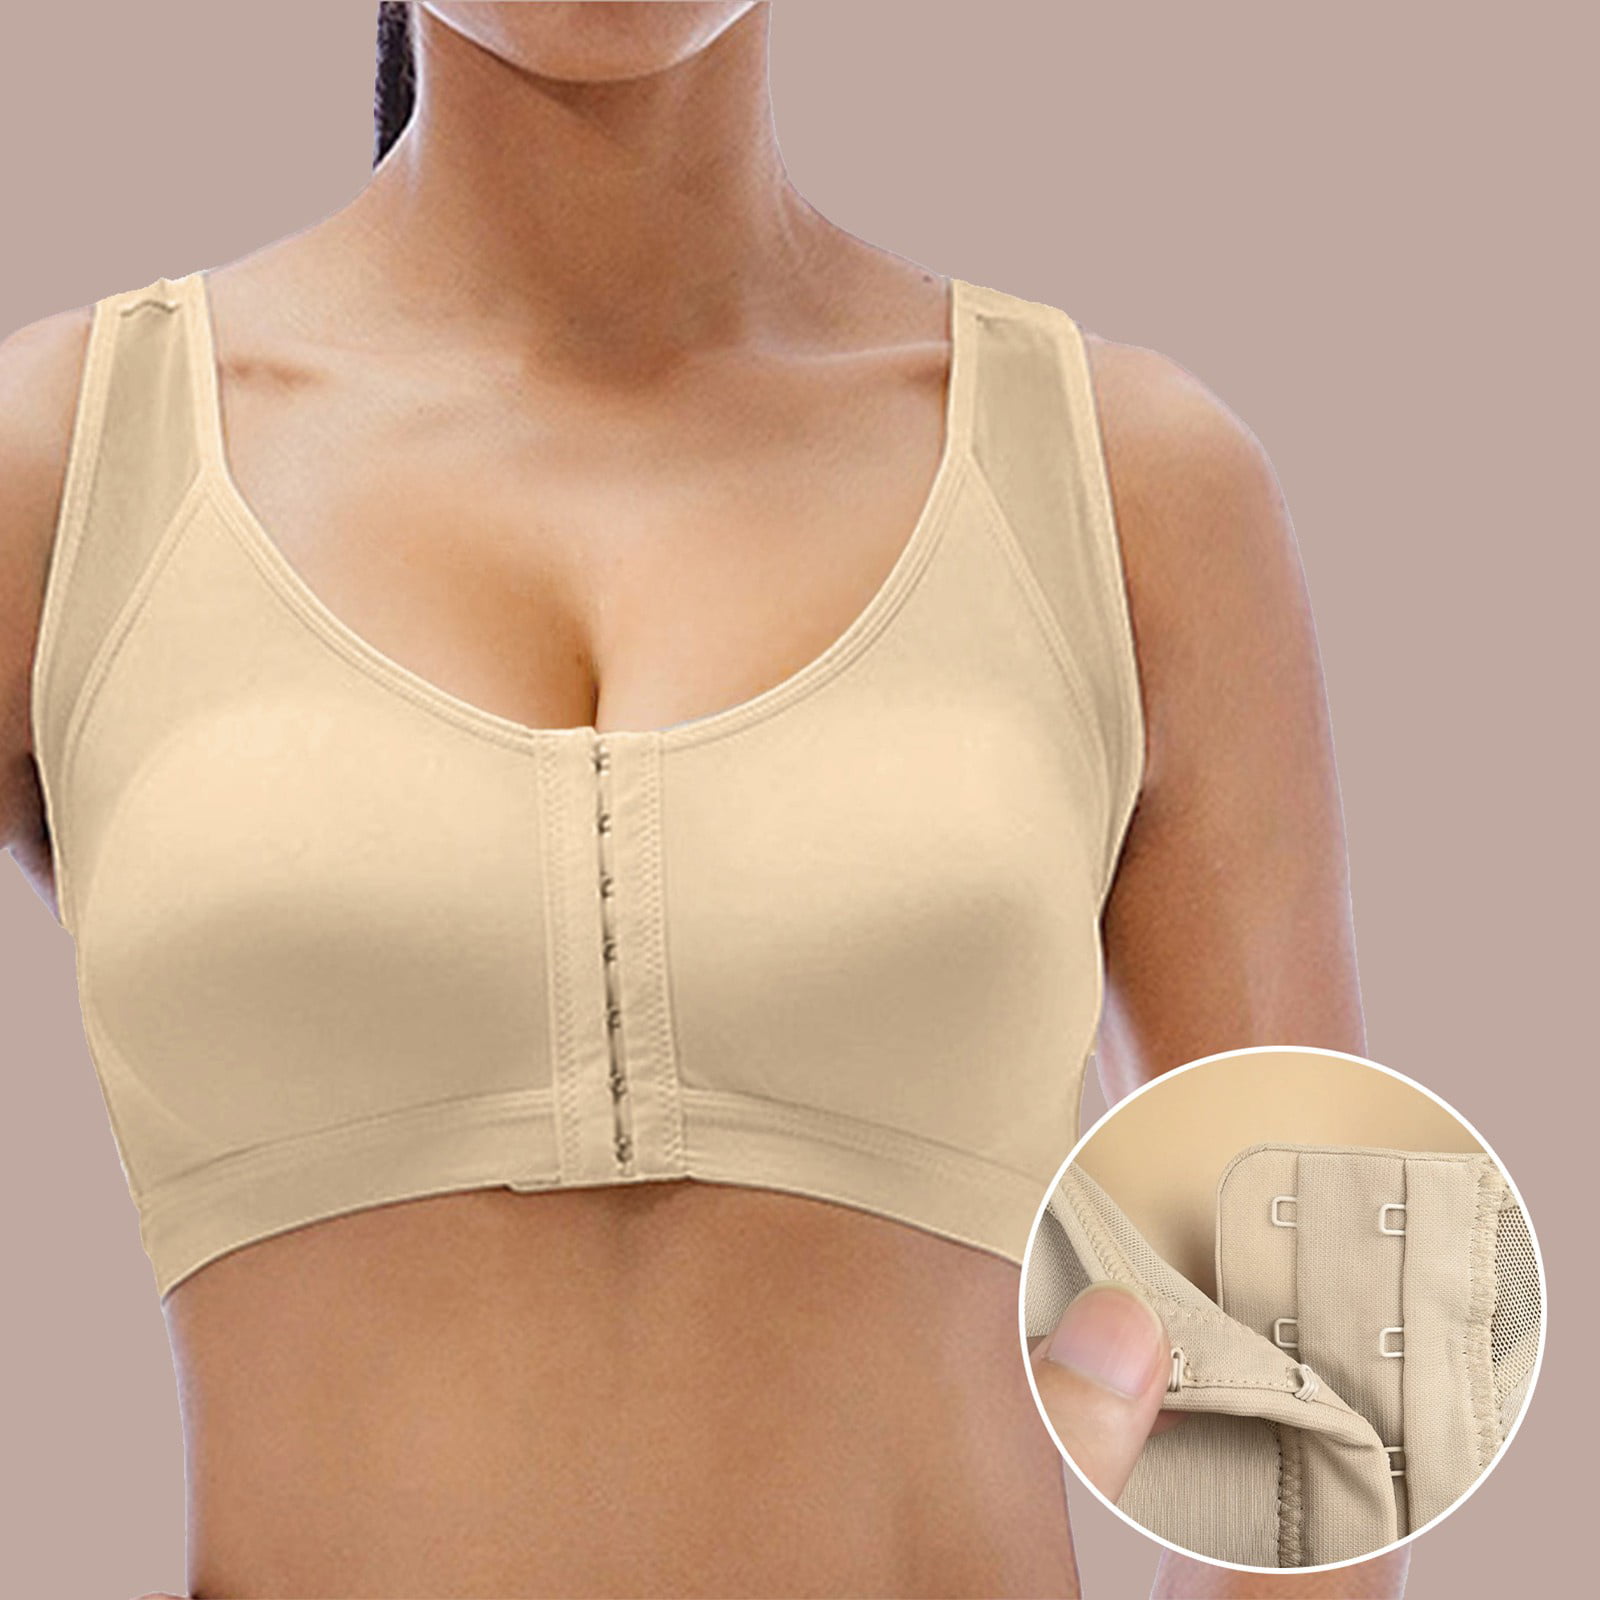 MRULIC bras for women Bra For Seniors Front Closure Posture Corrector Bra  For Women Full Coverage Front Closure Support Bra For Older Women Beige +